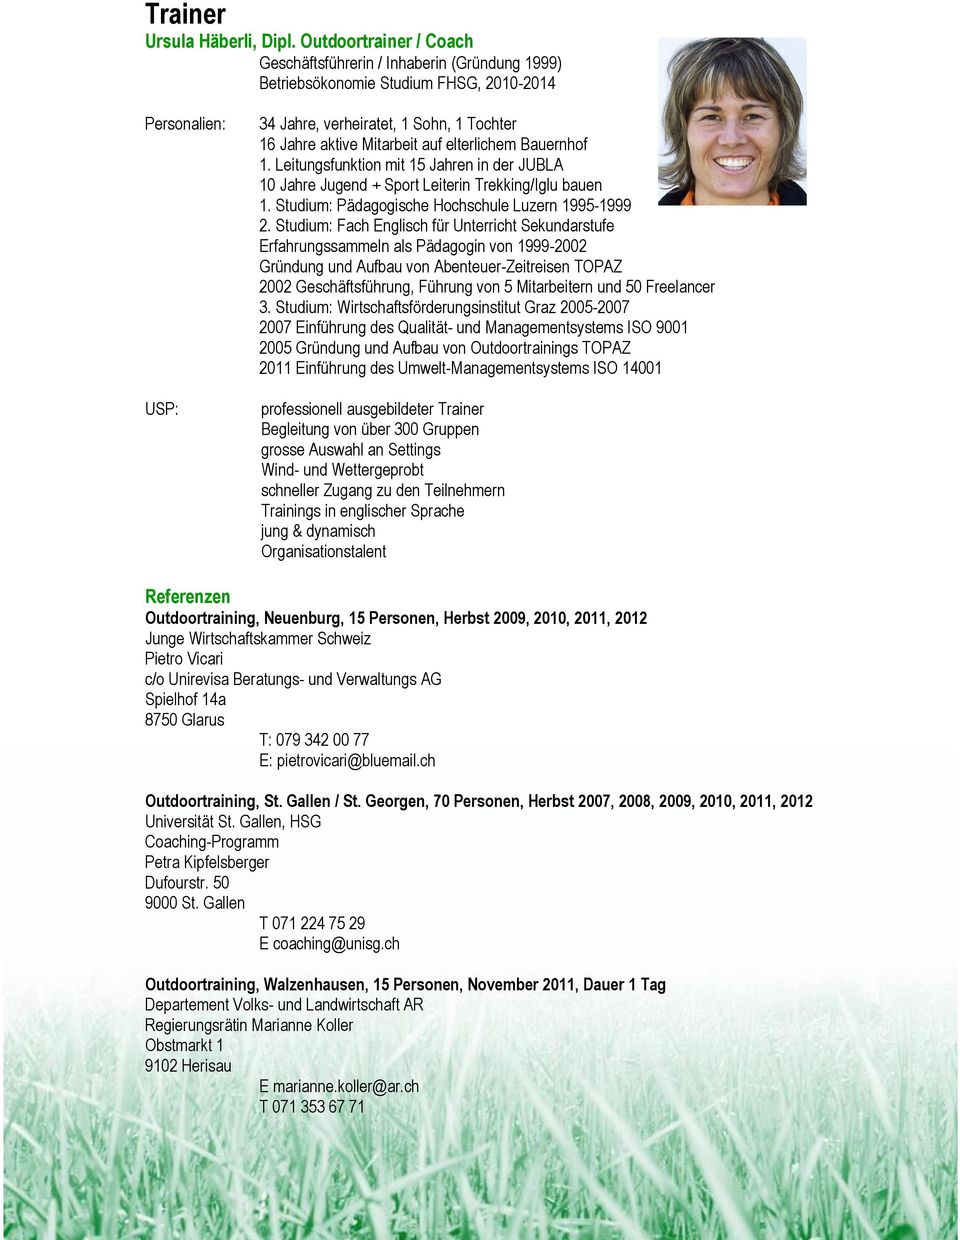 elterlichem Bauernhof 1. Leitungsfunktion mit 15 Jahren in der JUBLA 10 Jahre Jugend + Sport Leiterin Trekking/Iglu bauen 1. Studium: Pädagogische Hochschule Luzern 1995-1999 2.